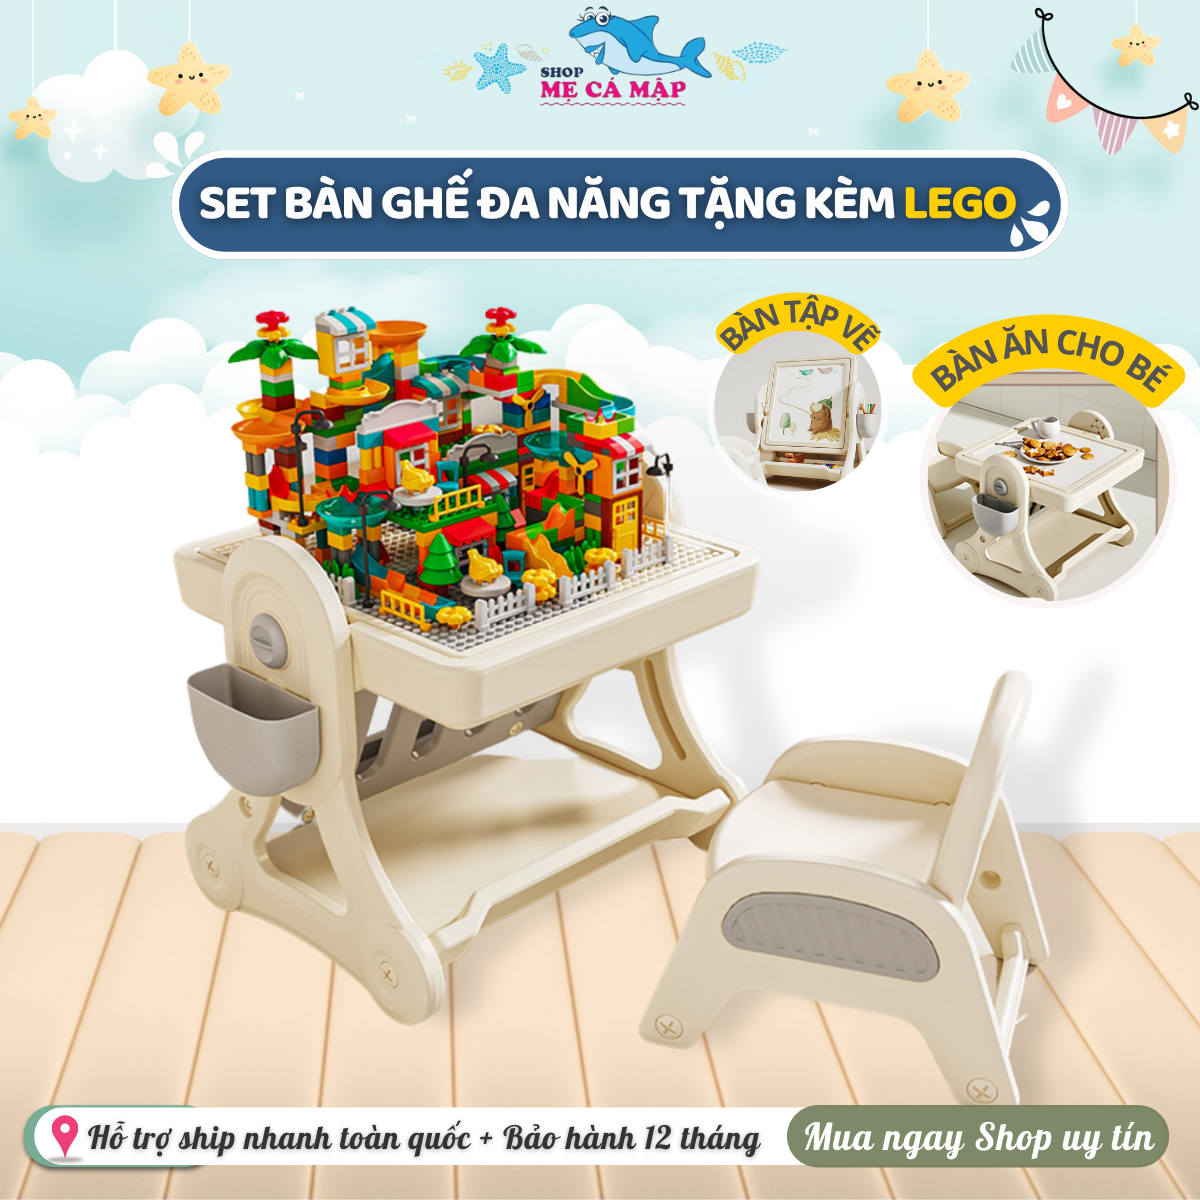 Bộ Bàn Ghế Đa Năng Cao Cấp Pakey, Bàn Chơi Xếp Hình Kèm 400 Chi Tiết Lego